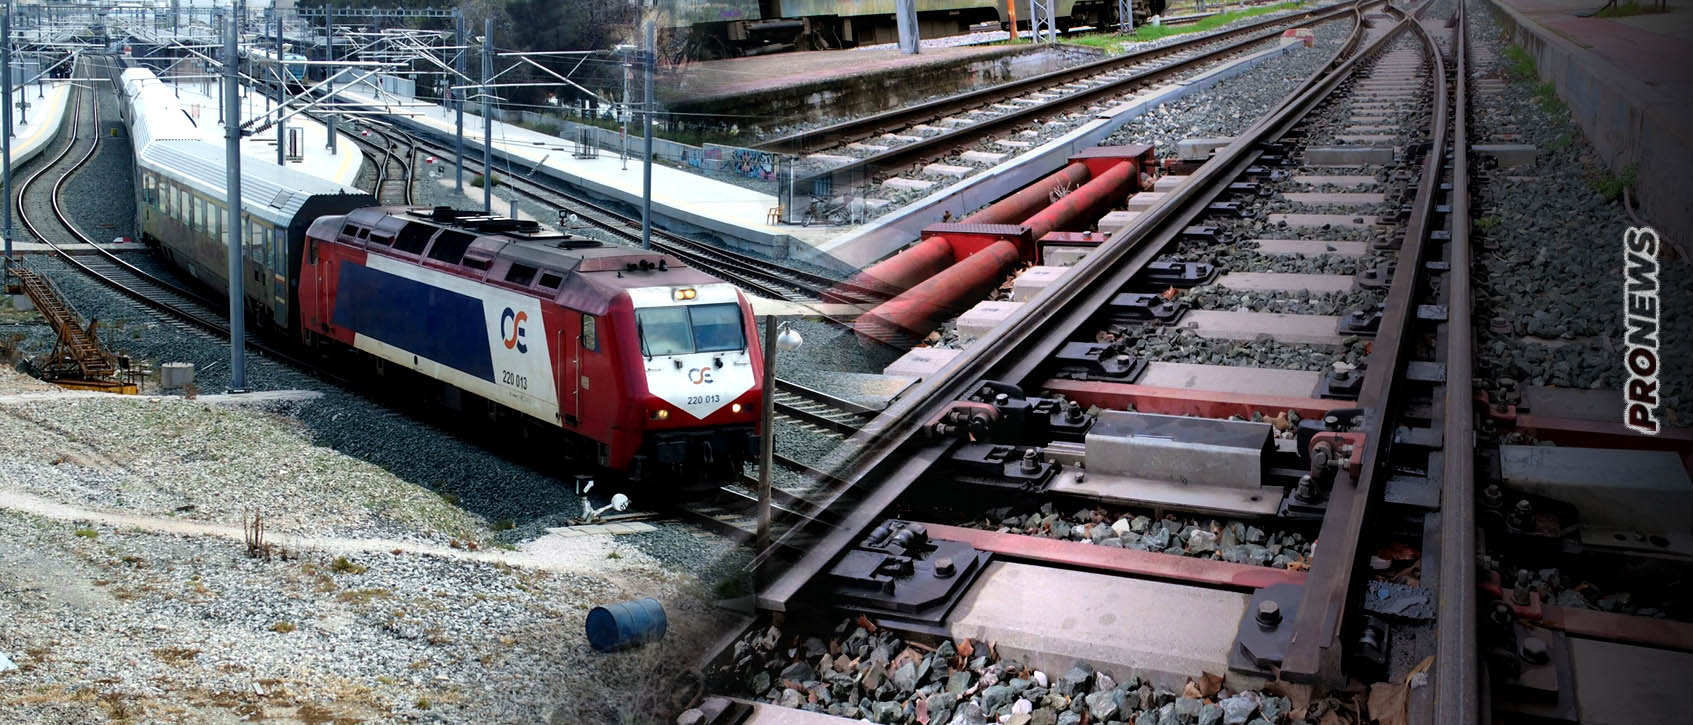 Βίντεο-ντοκουμέντο: 20 λεπτά πριν το έγκλημα των Τεμπών αποφεύχθηκε άλλη σύγκρουση τρένων στην ίδια γραμμή!